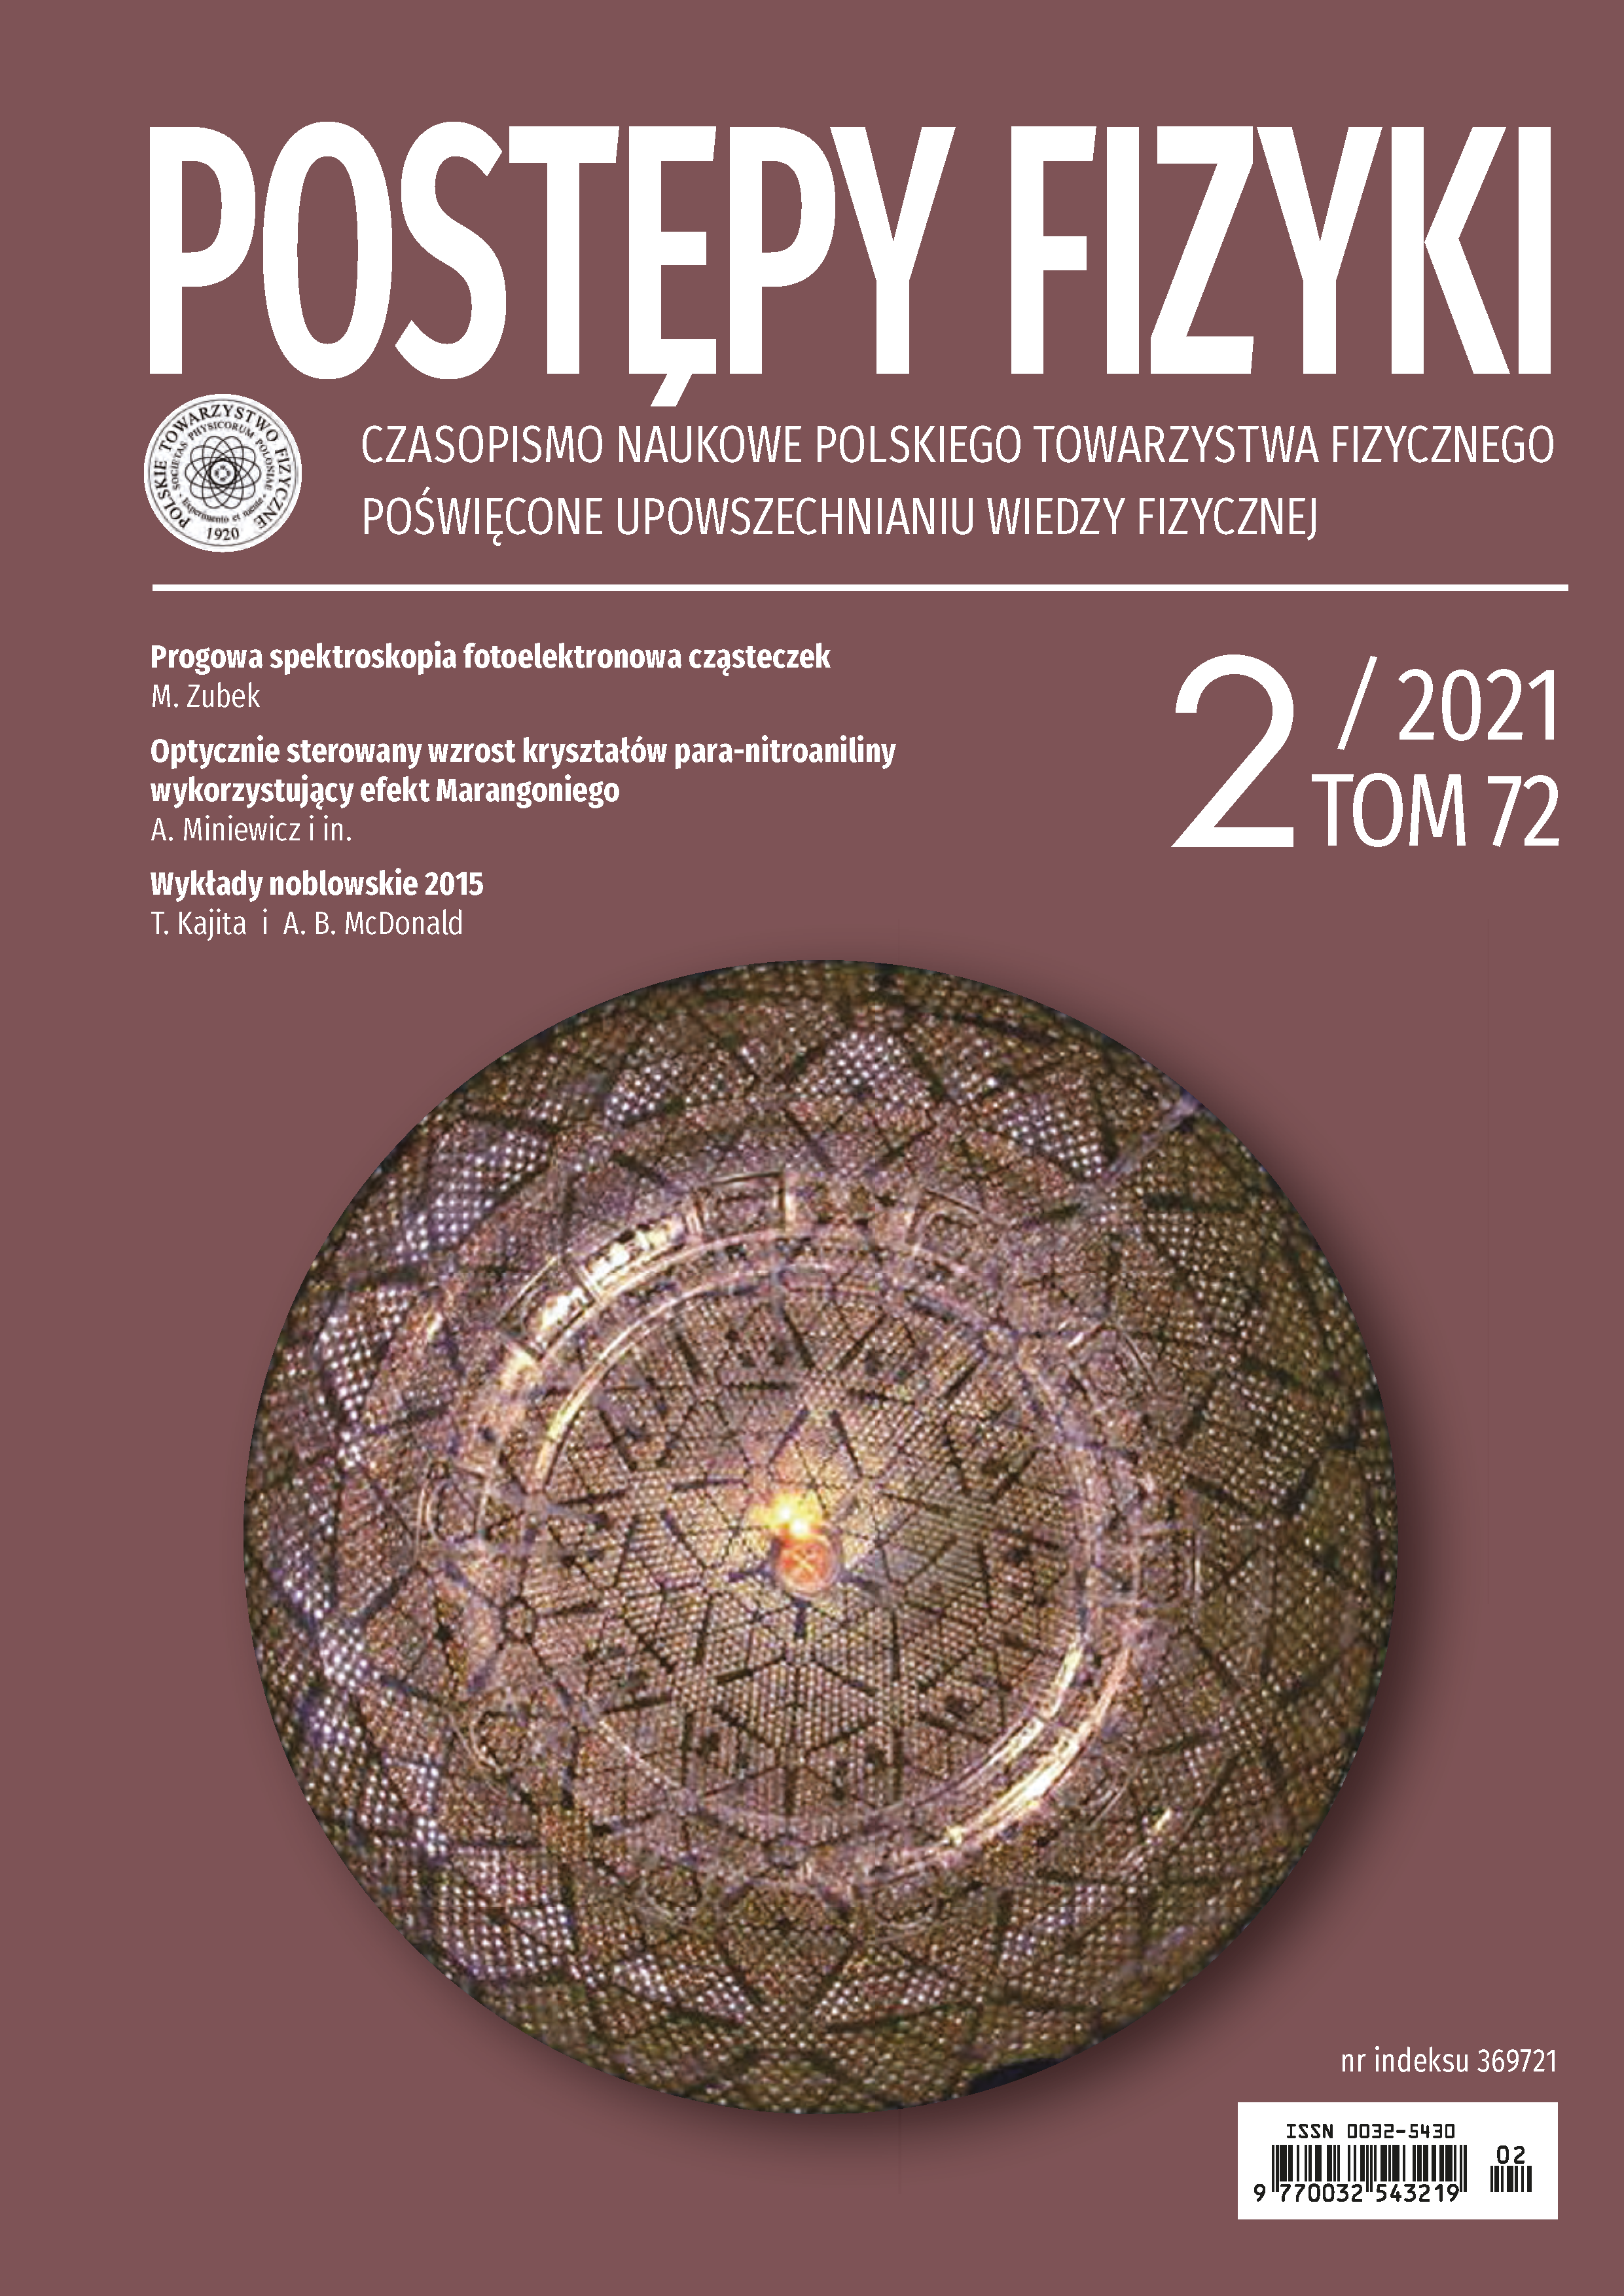 Postępy Fizyki 72 (2) 2021